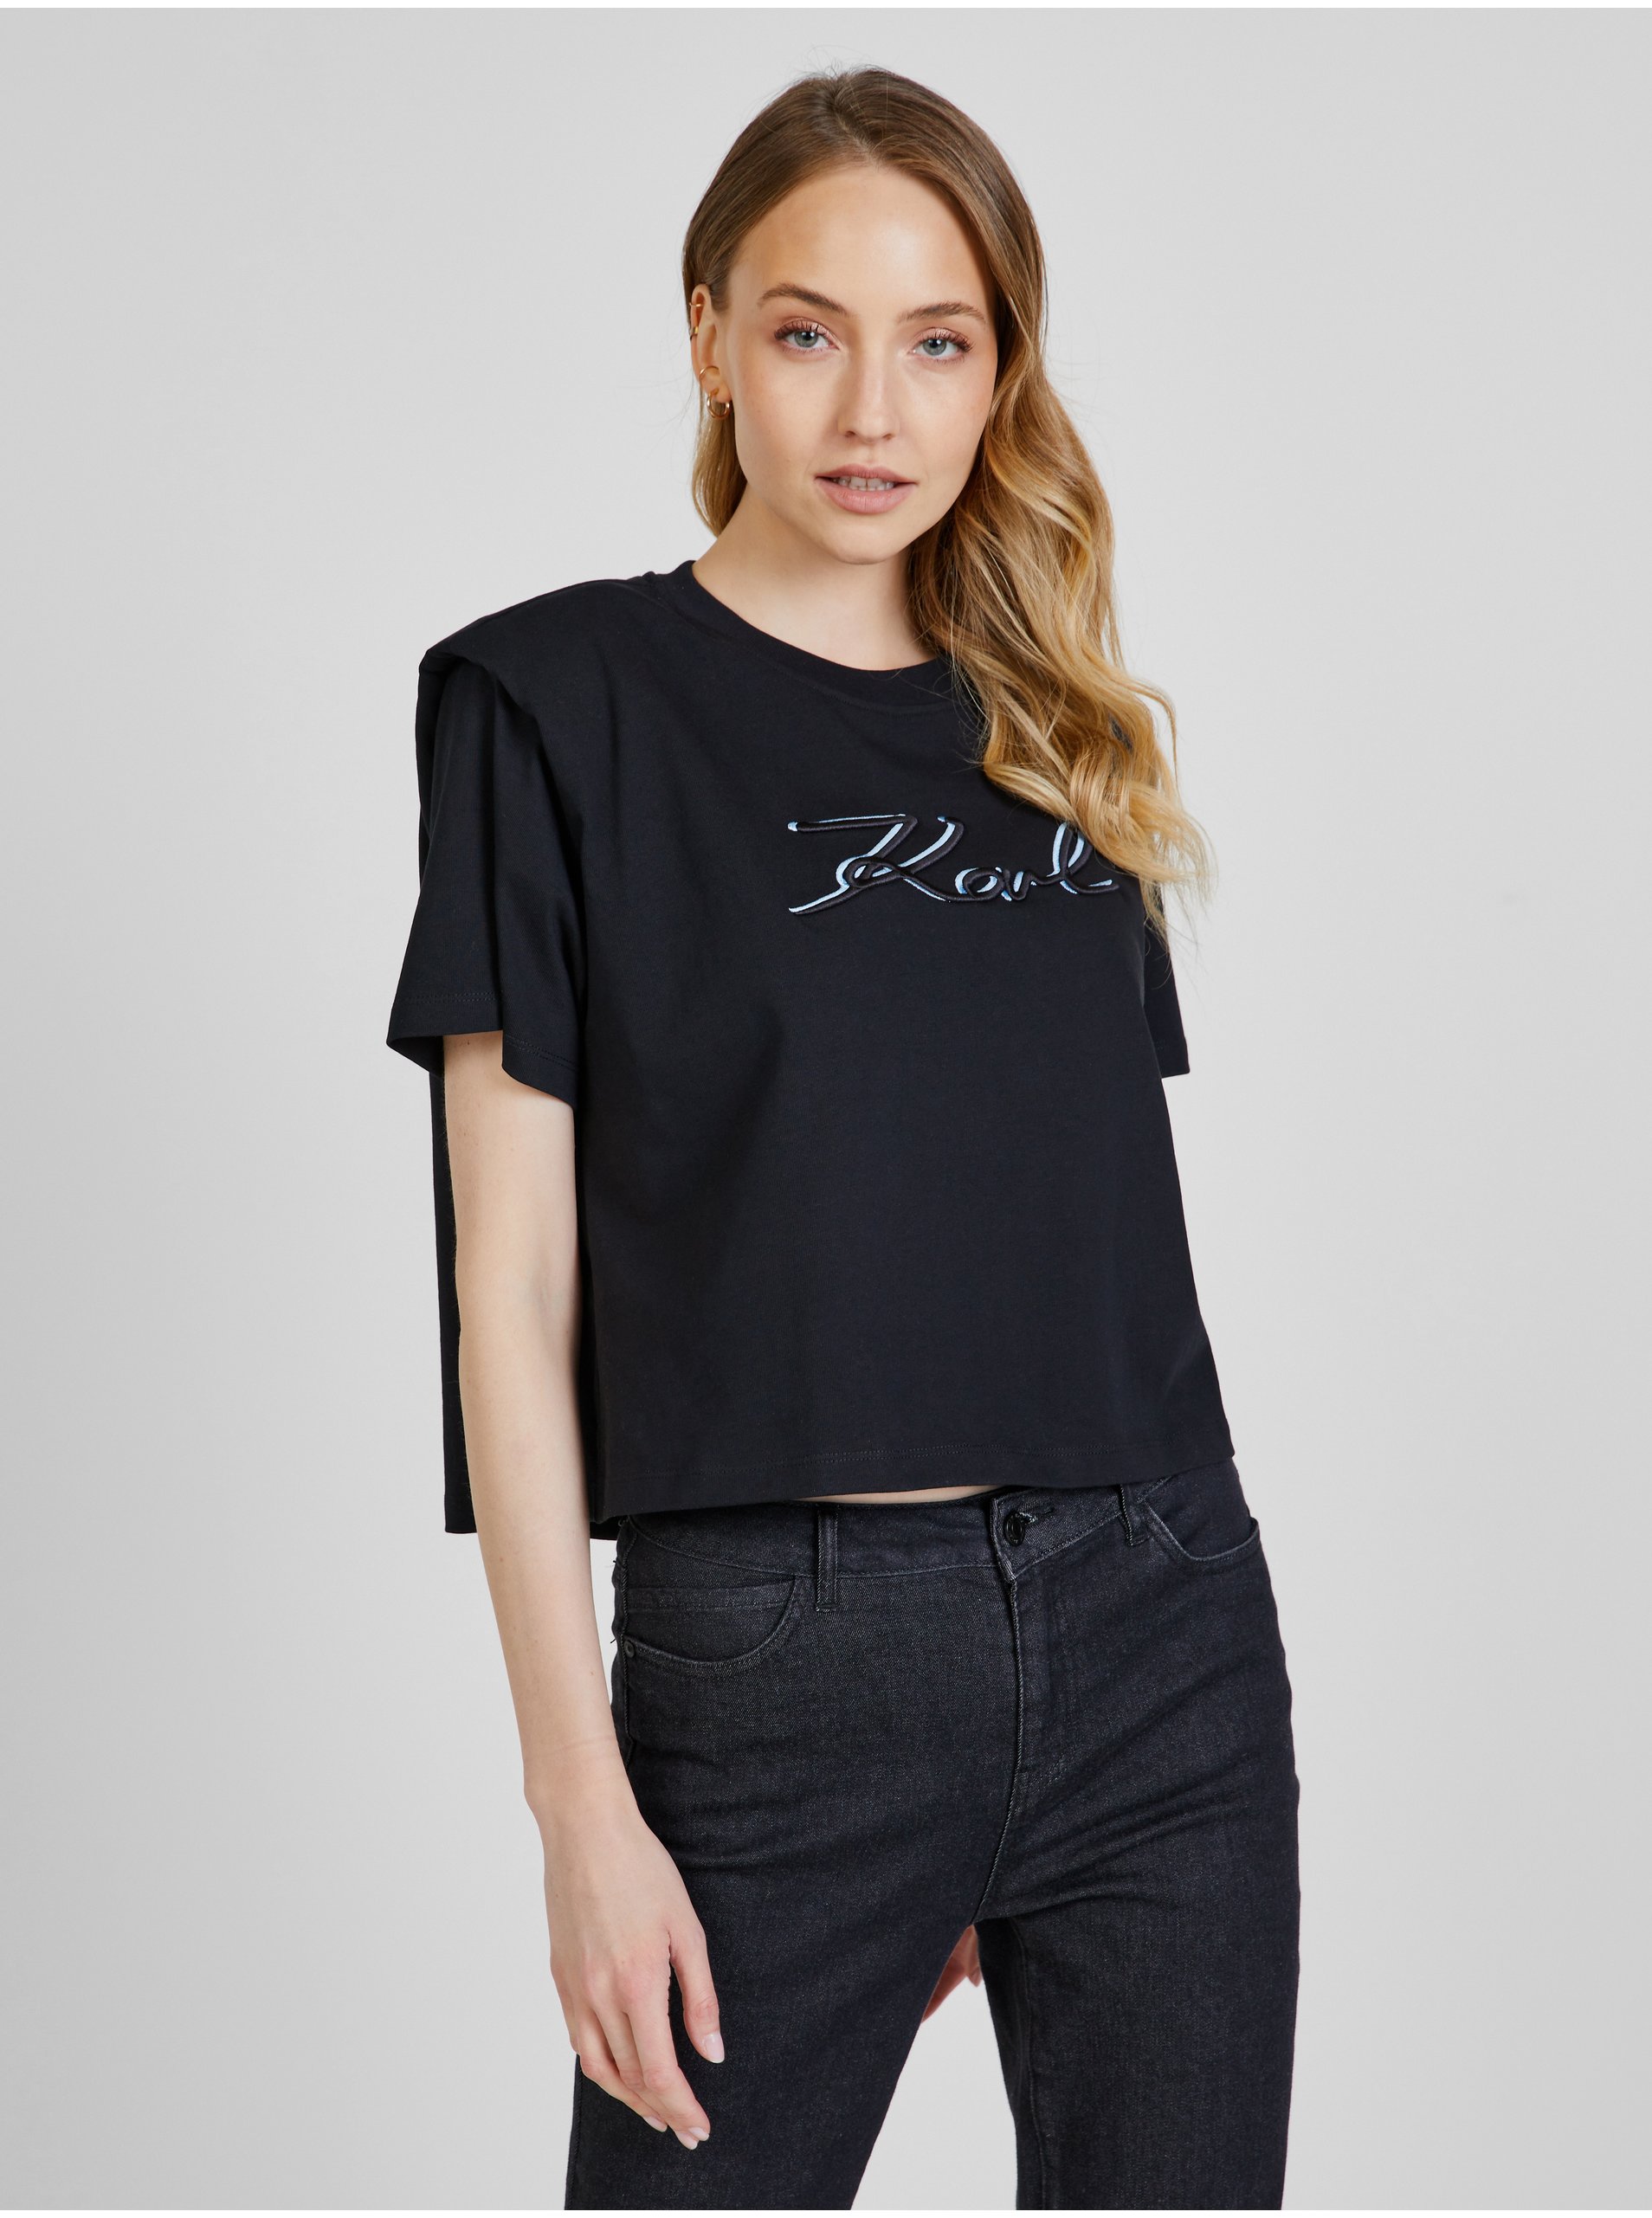 Lacno Čierne dámske tričko s ramennými vycpávkami KARL LAGERFELD